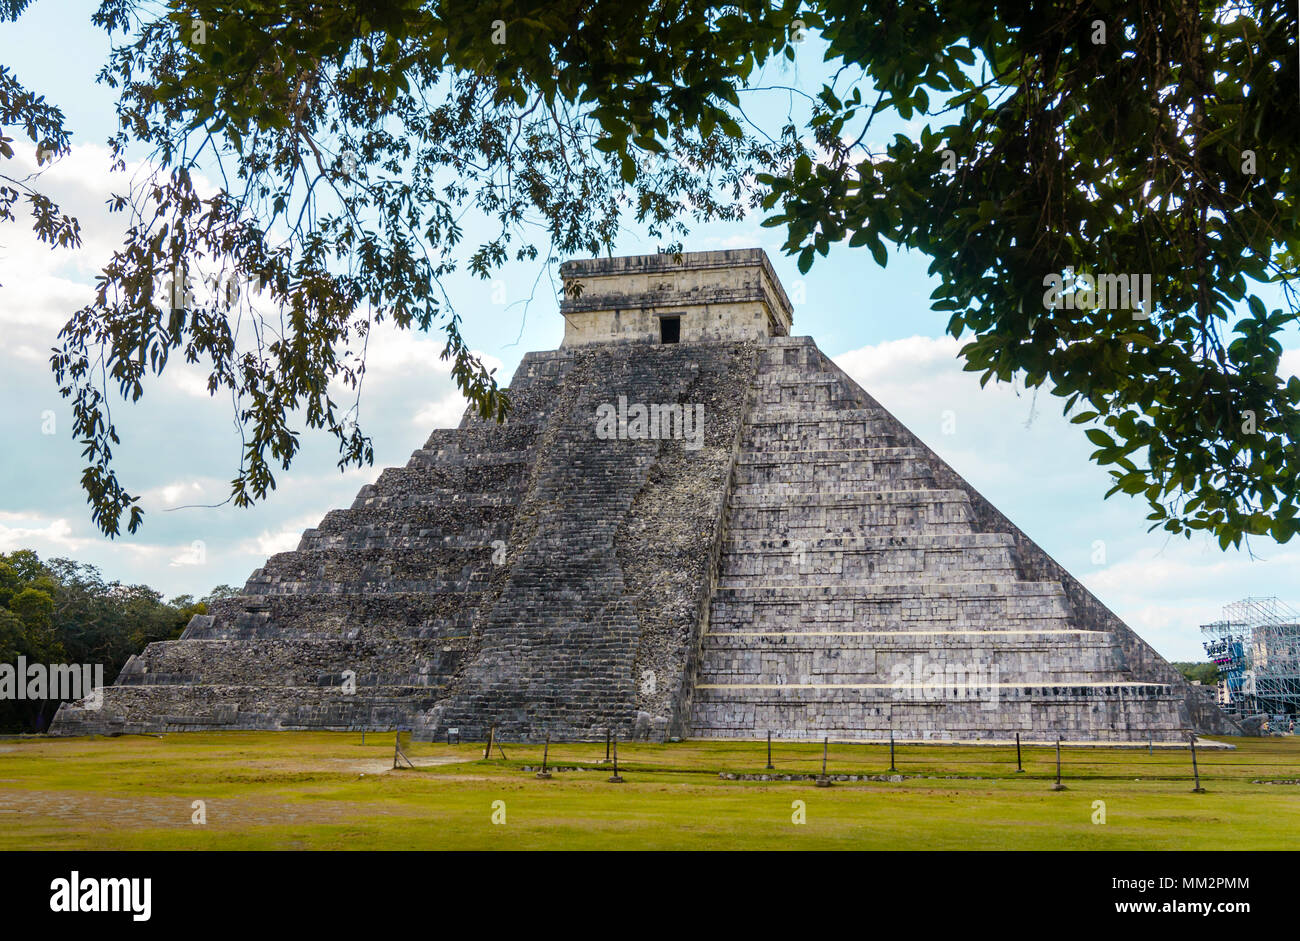 Pyramide von Chichen Itza in Yucatan Mexiko mit keine Personen Stockfoto